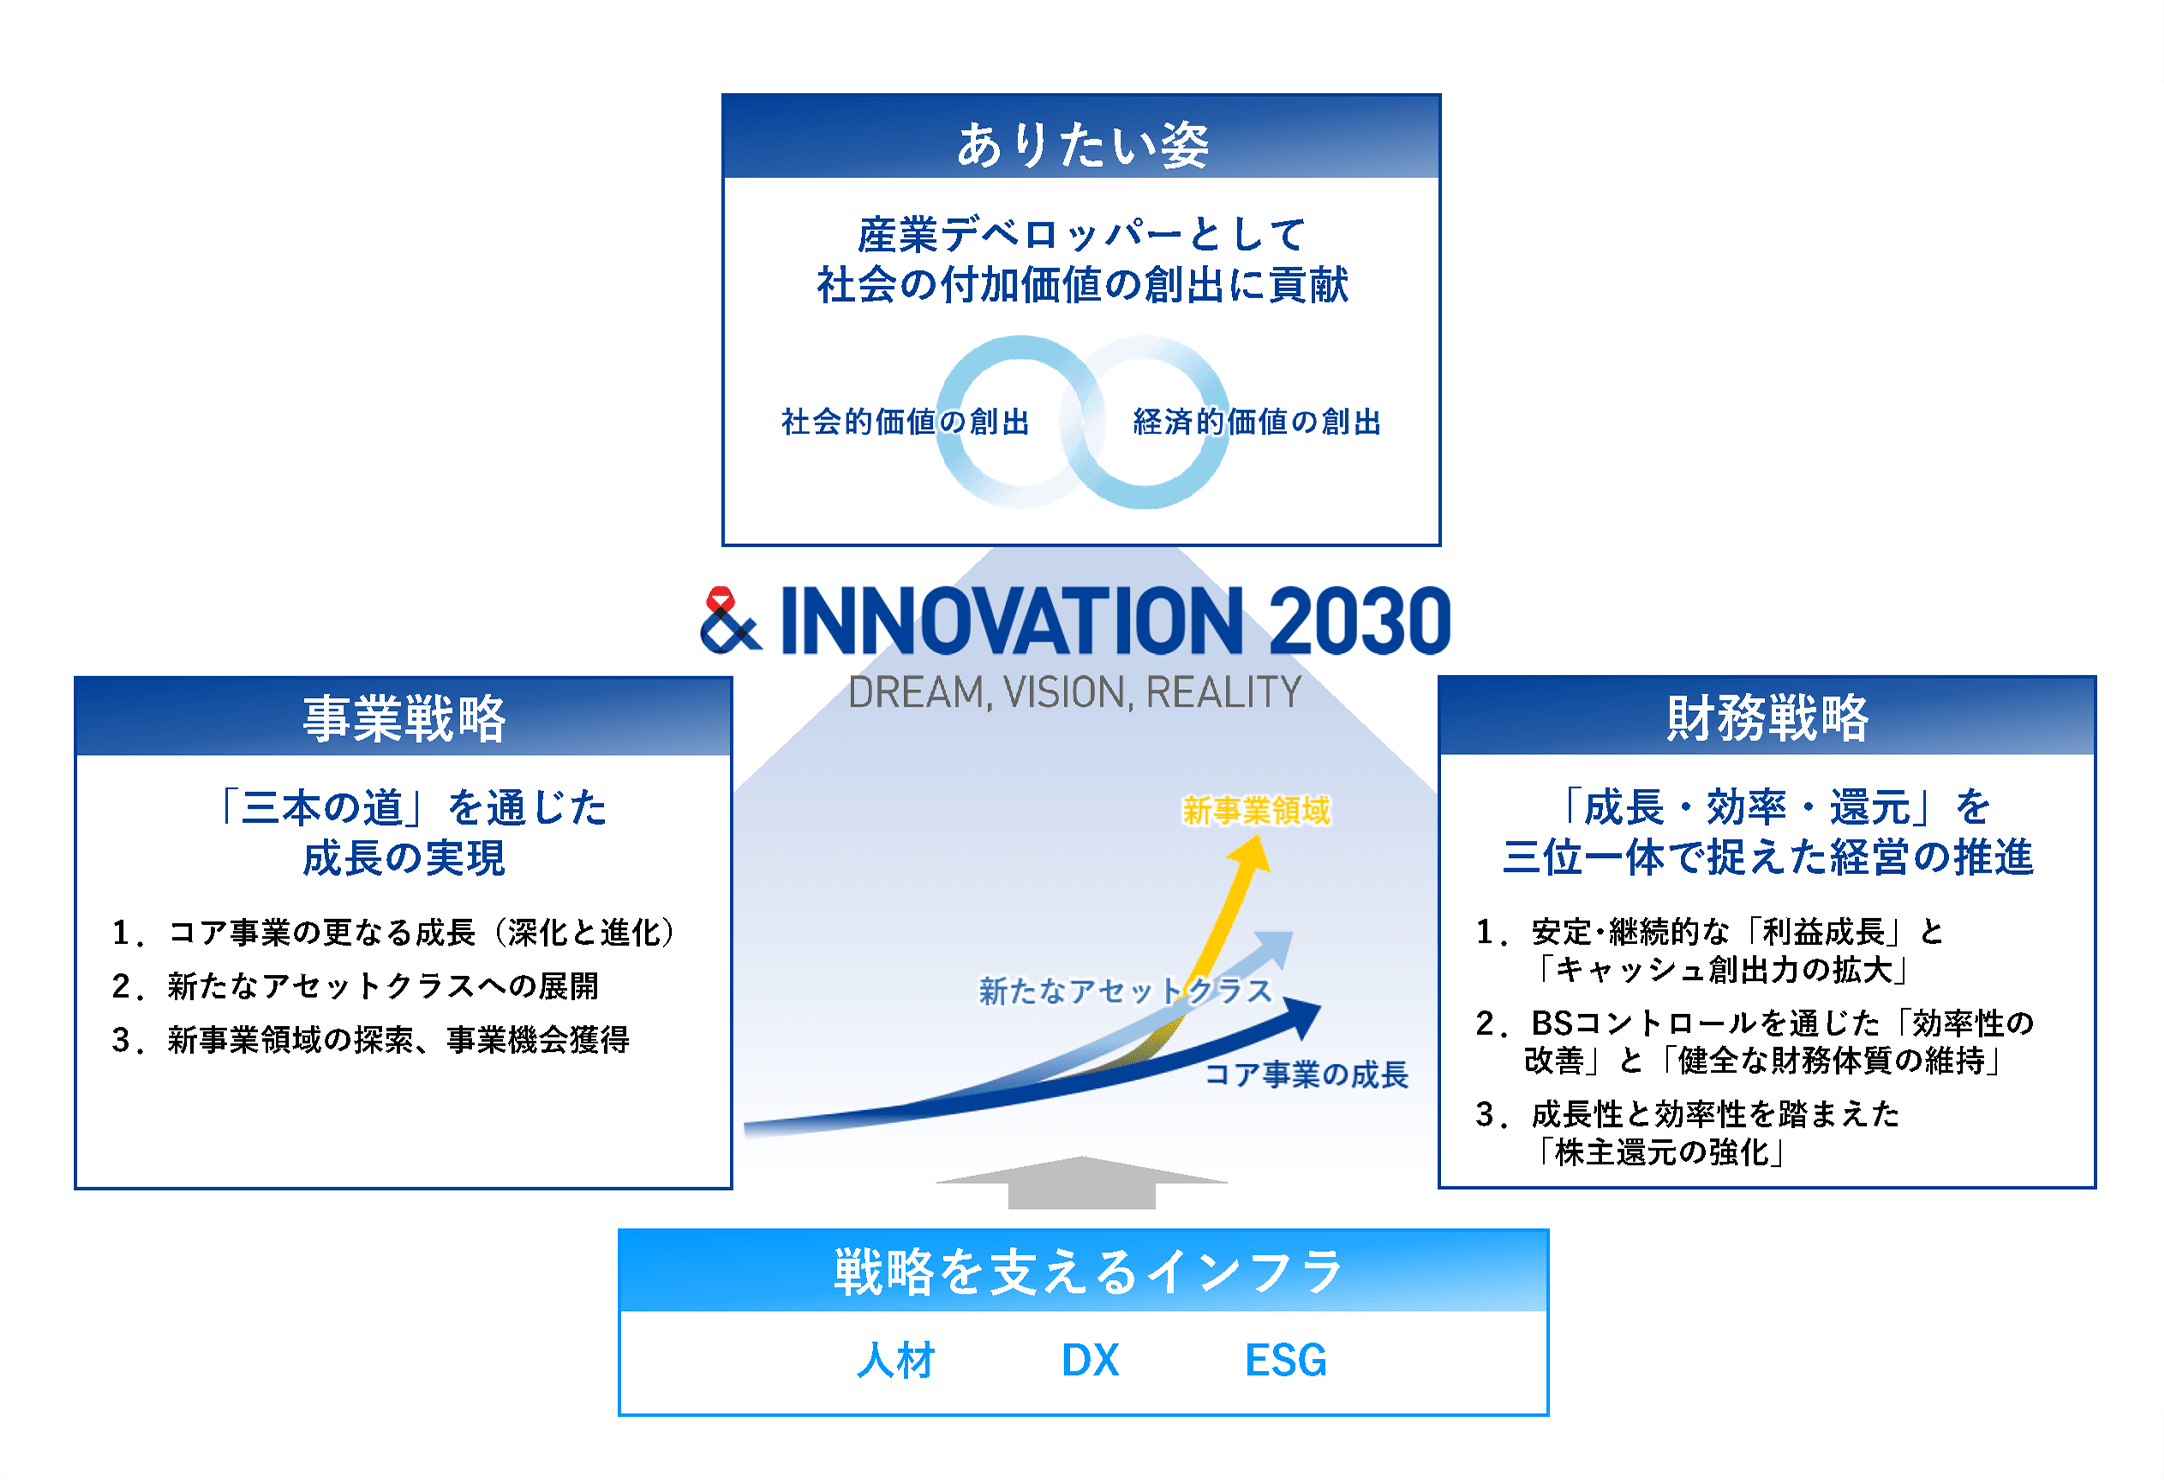 & INNOVATION 2030